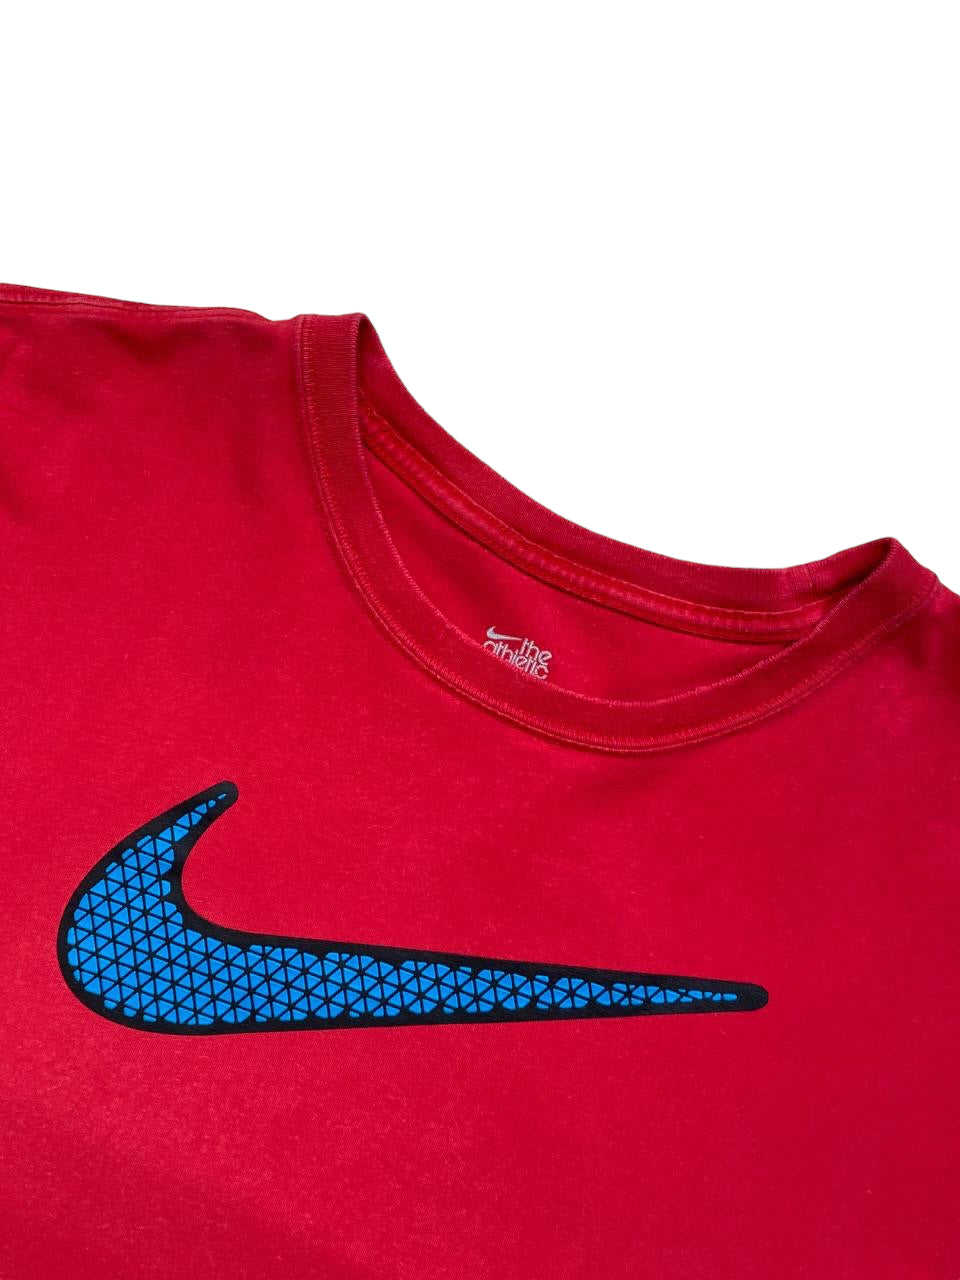 T-Shirt Nike - L